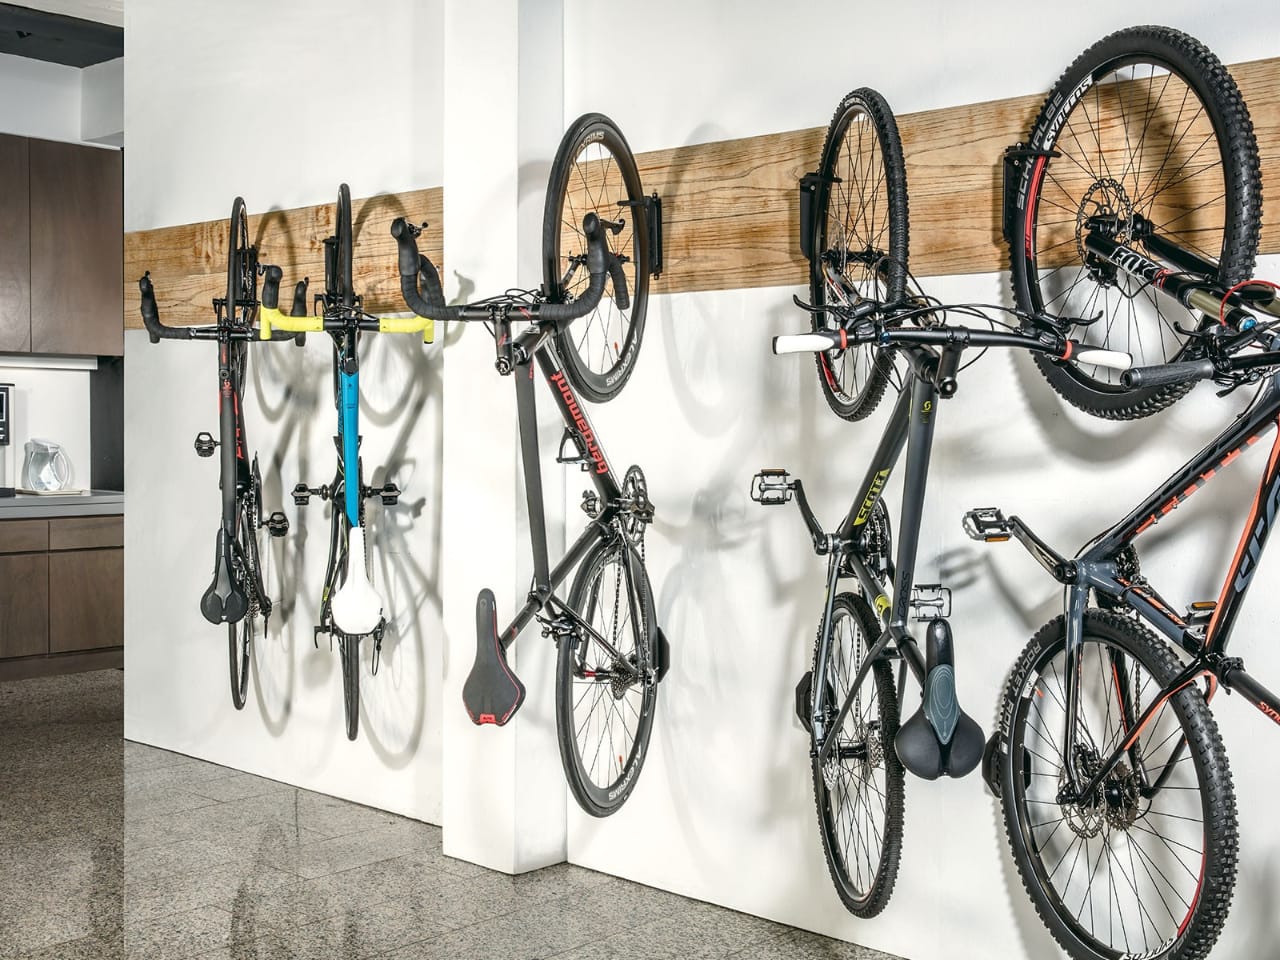 На зображенні представлена стіна усередині приміщення із кріпленнями для велосипедів. На кріпленнях висять чотири велосипеди різного кольору та дизайну. Зліва направо: велосипед із чорною рамою та синіми елементами, велосипед із білою рамою та жовтими елементами, велосипед із чорною рамою та червоними акцентами, та велосипед із чорною рамою та зеленими вставками. Внизу під кожним велосипедом висять відповідні сідла. На задньому плані видно частину кухонного гарнітуру з мікрохвильовою піччю.